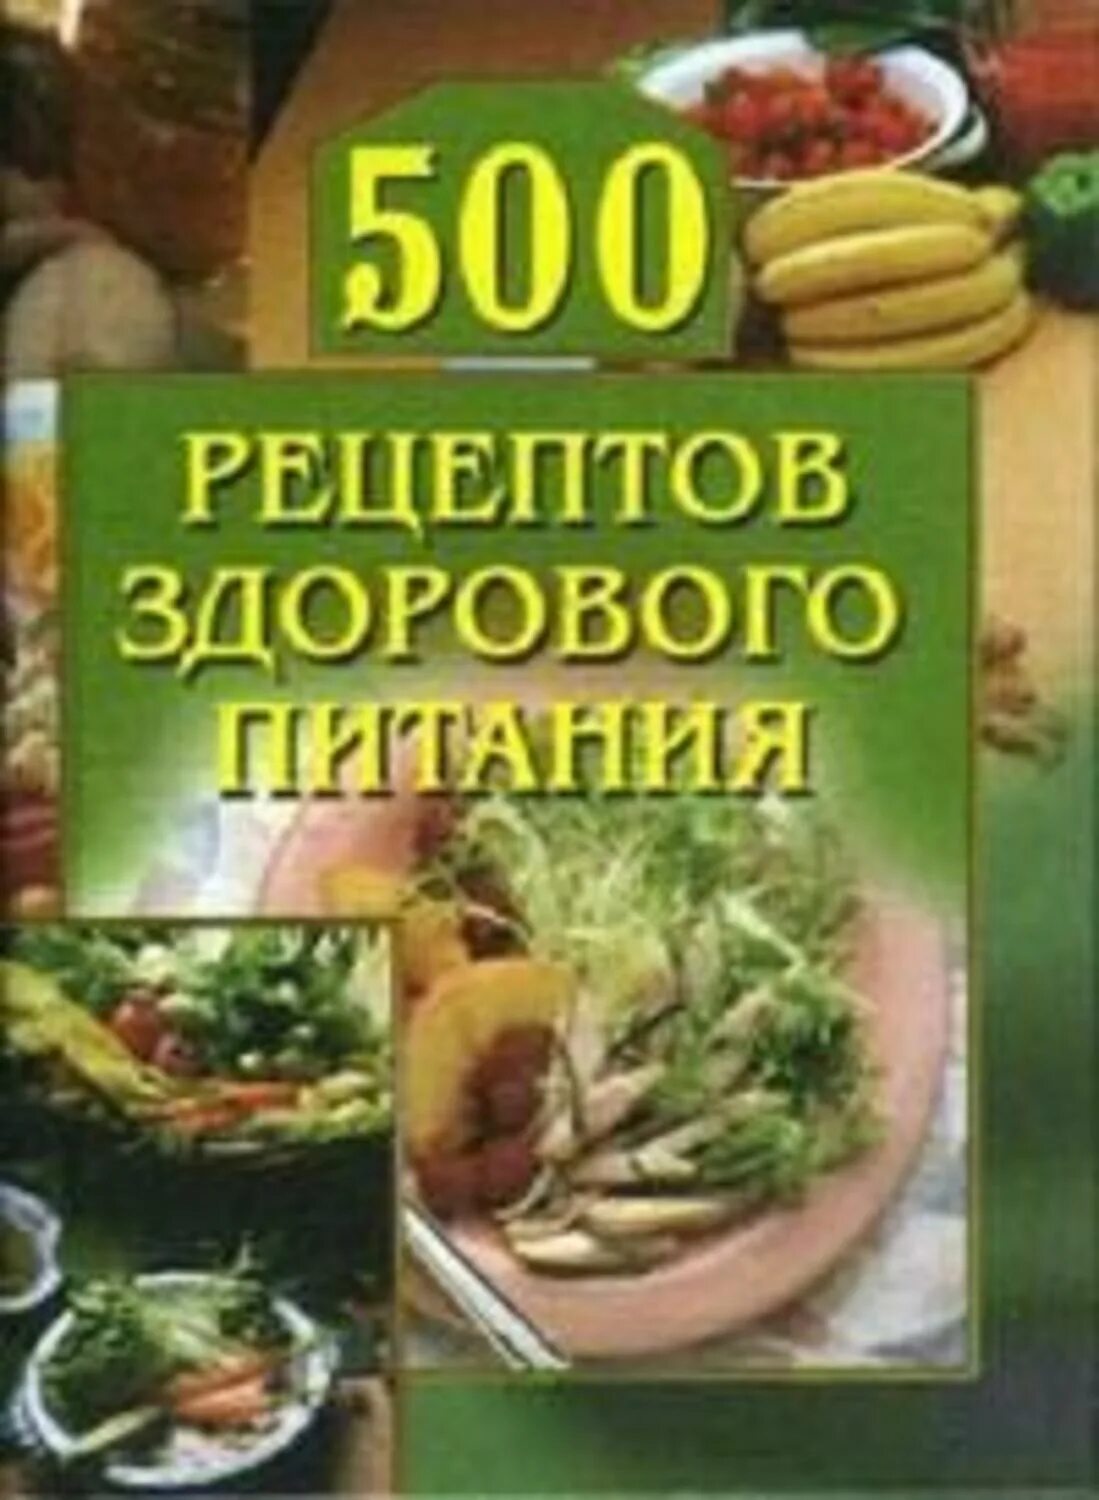 Книга правильных рецептов. Рецепты здорового питания. Книга здоровых рецептов. Книга рецептов правильного питания. Книга рецептов здоровой пищи.